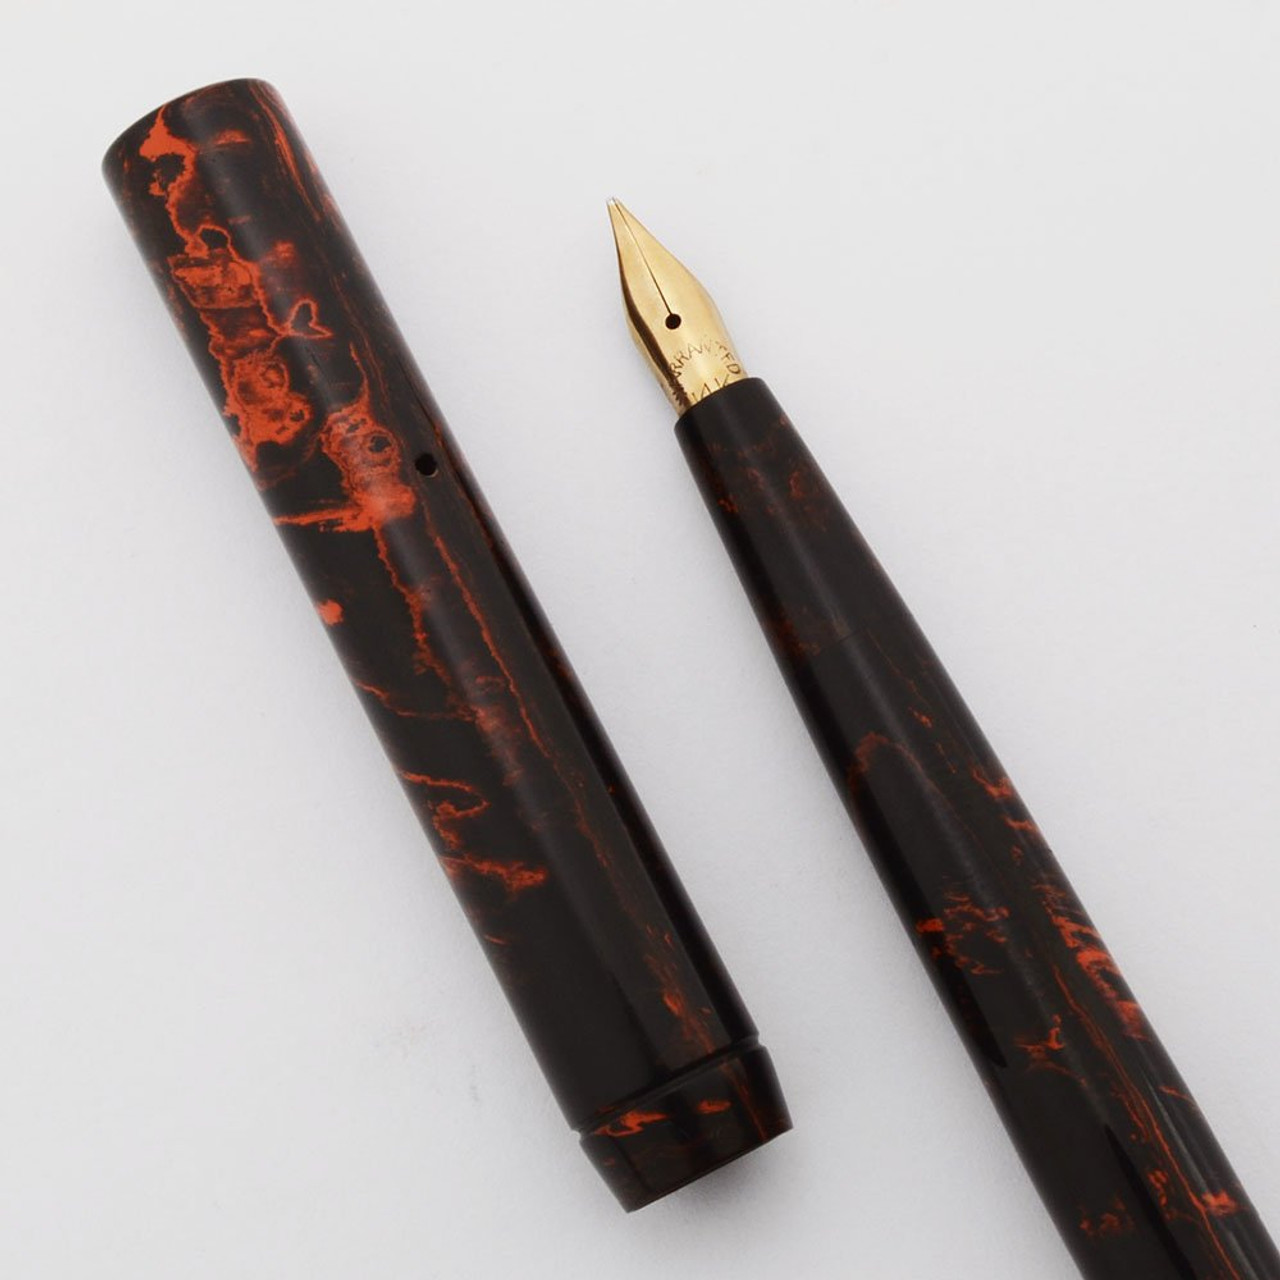 Welty "WAWCo" Fountain Pen - Red Mottled Hard Rubber, Eyedropper, Flexible Fine 14k Nib (Excellent, Works Well)